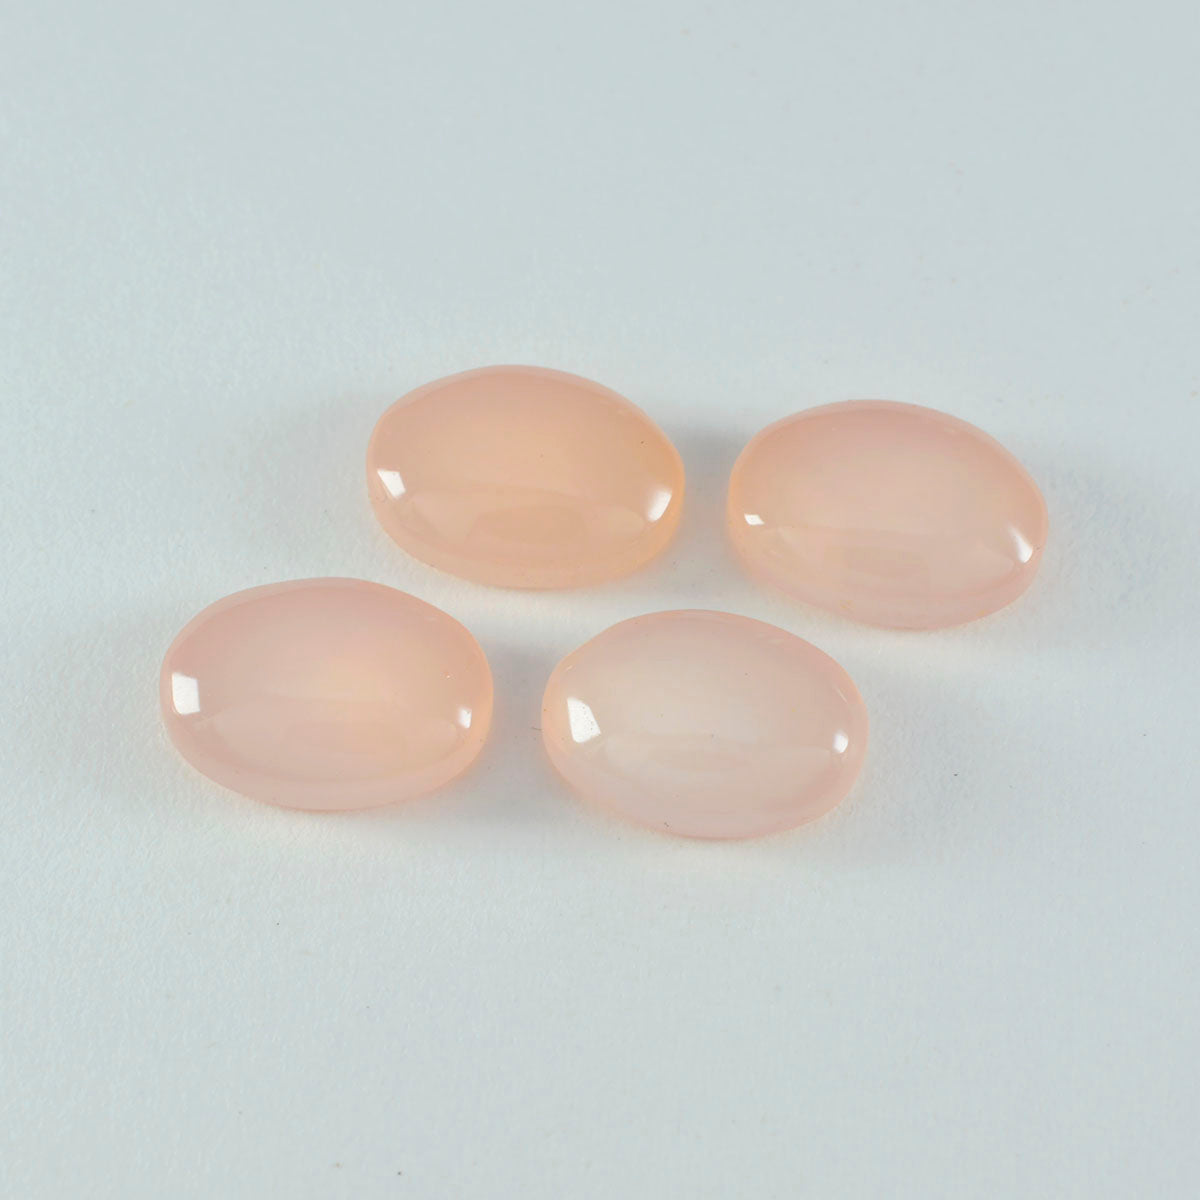 riyogems 1 шт. кабошон из розового кварца 9x11 мм овальной формы фантастического качества, свободный драгоценный камень